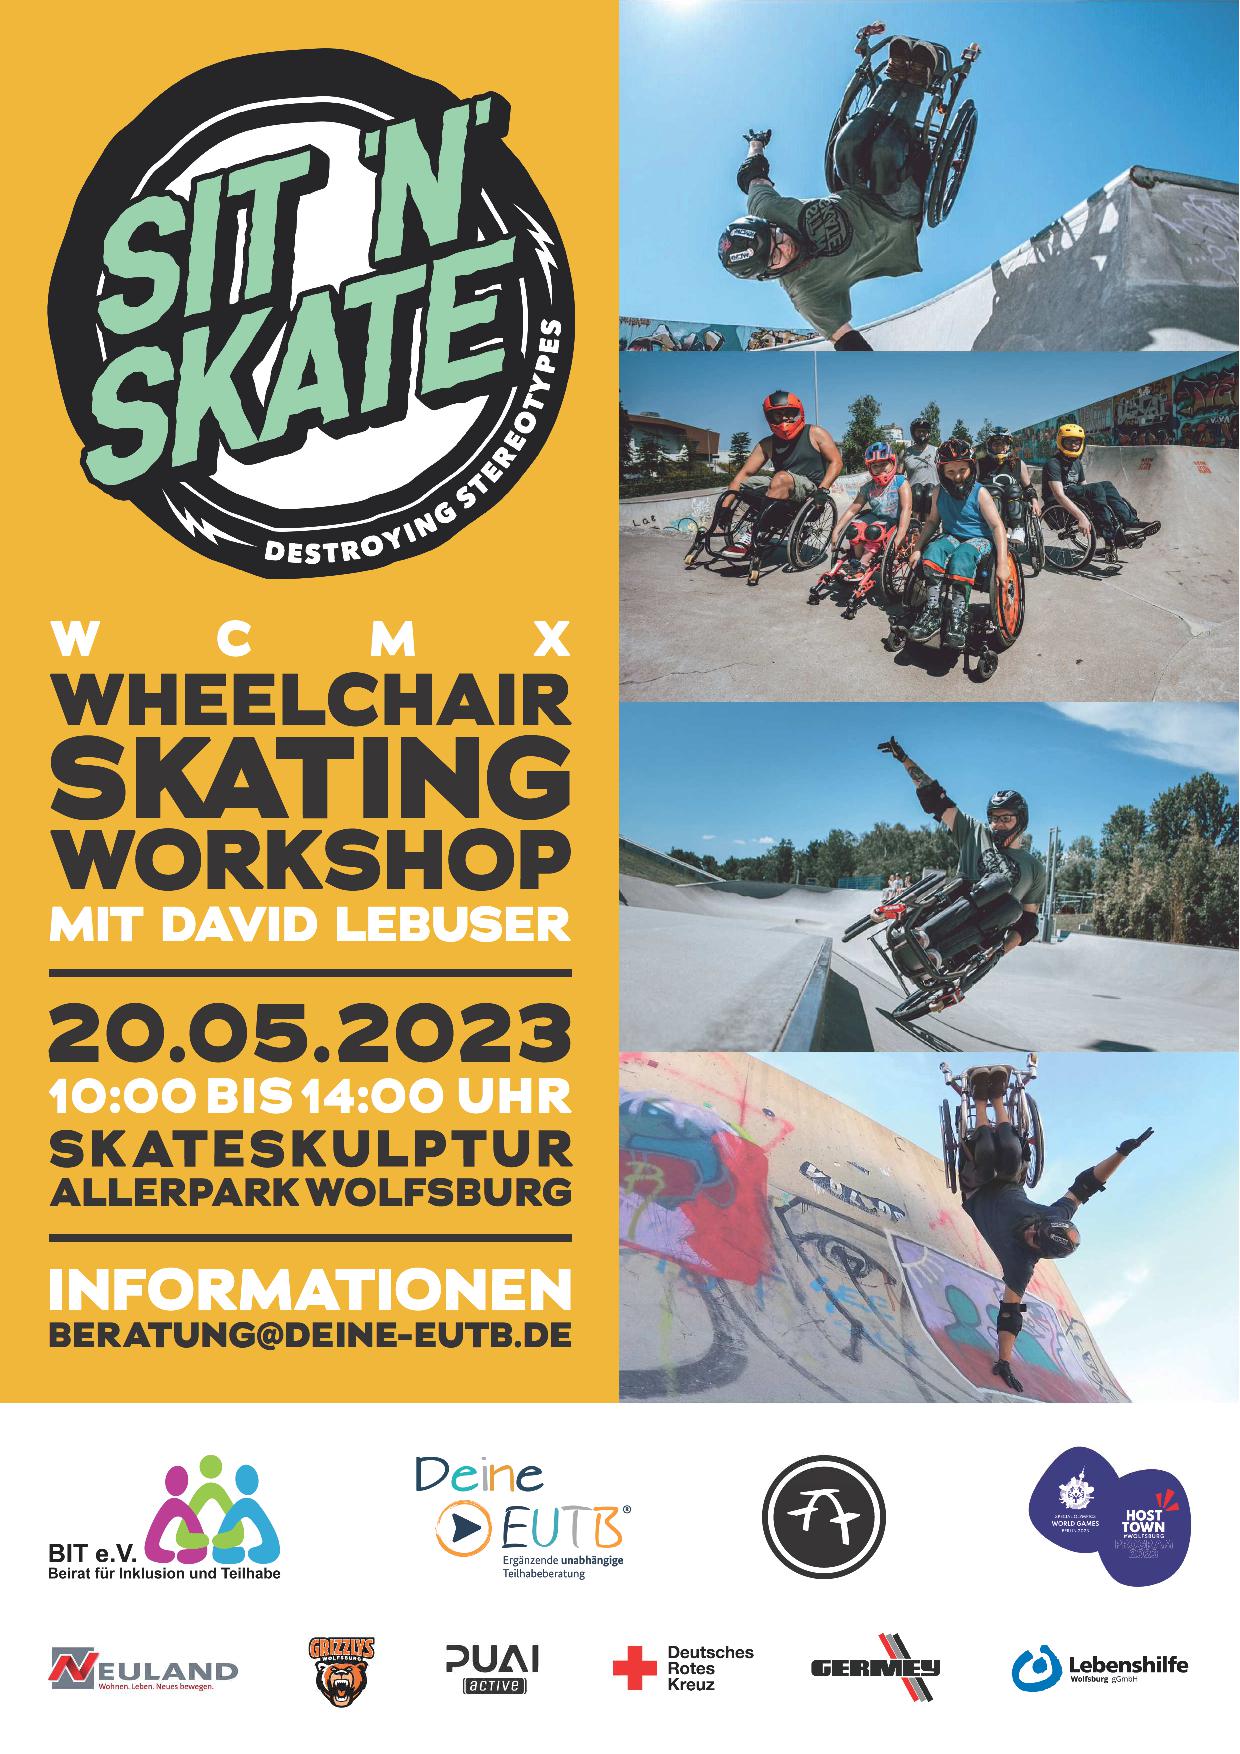 WheelChair Skating Workshop am 20.05.2023 im Allerpark